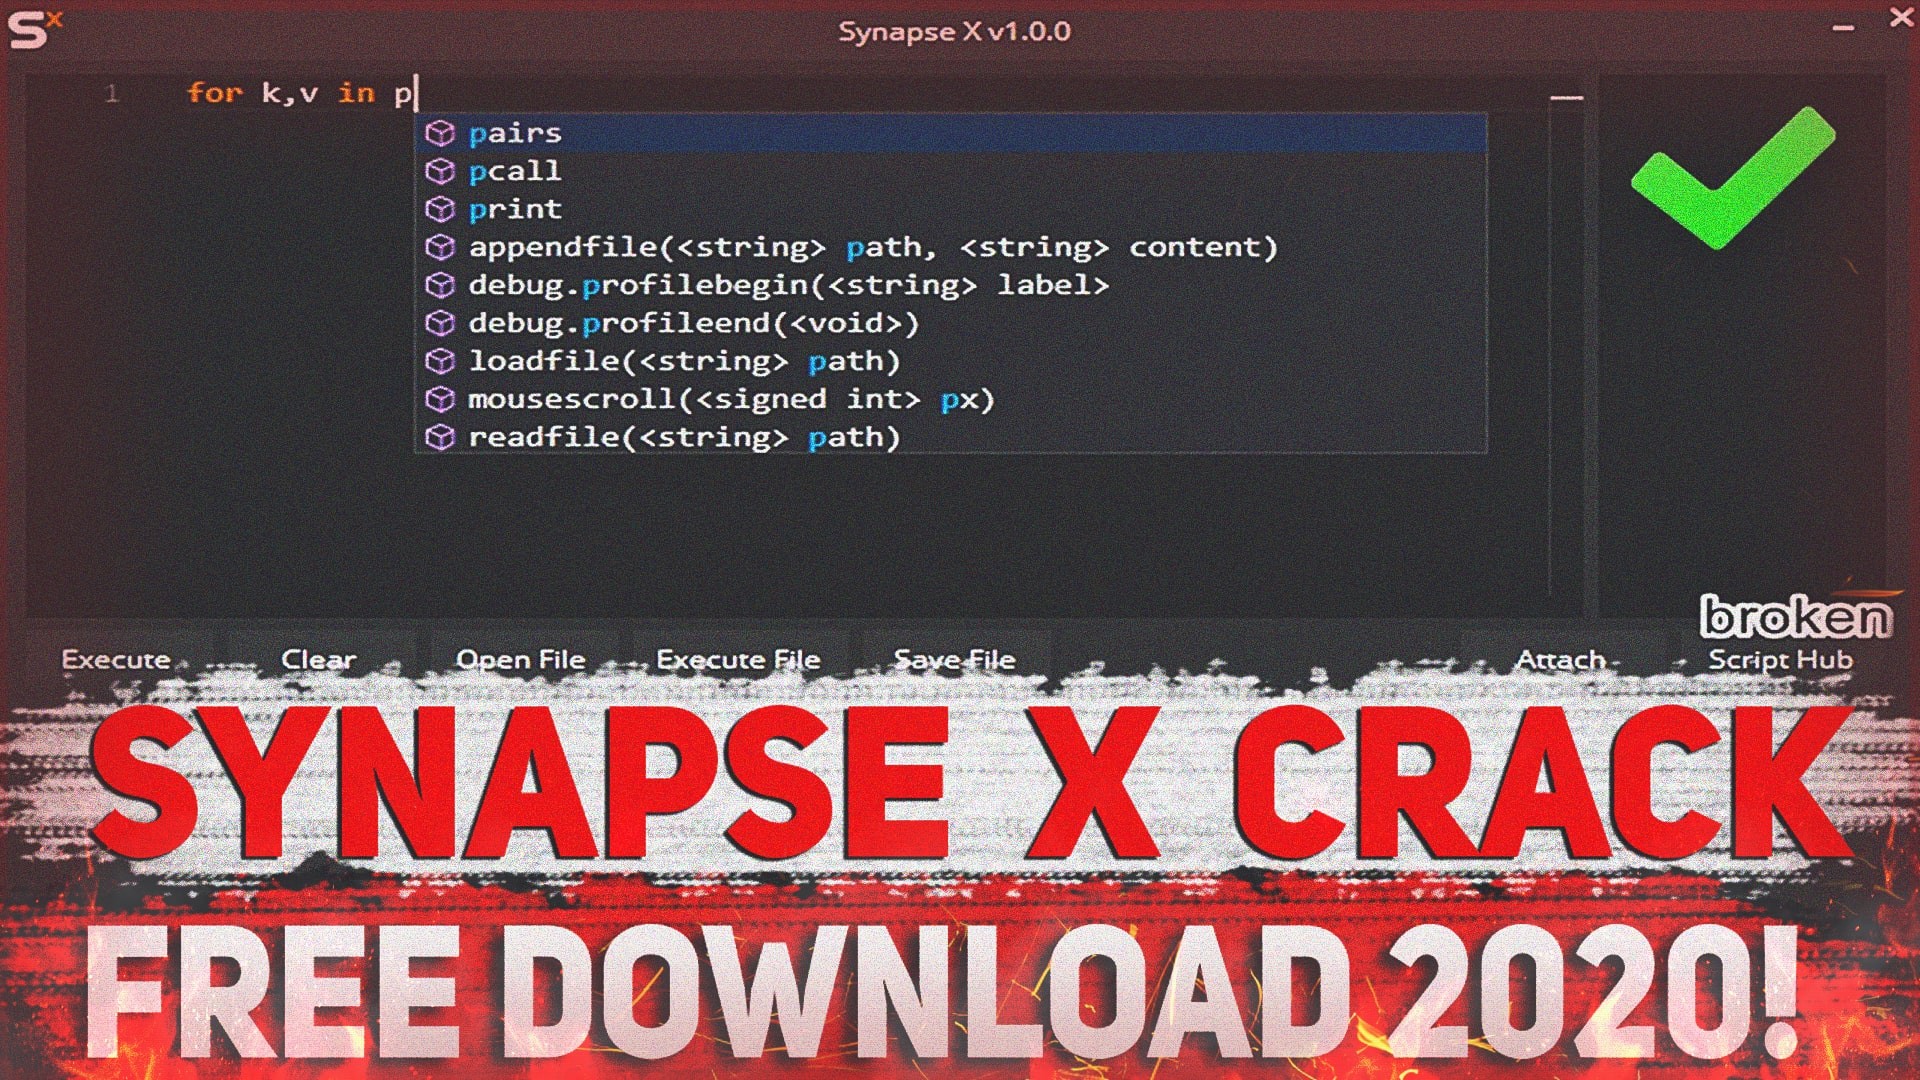 Fluxus Exploit Website - скачать extreme roblox new exploit lvl 7 redboy v1 6 free